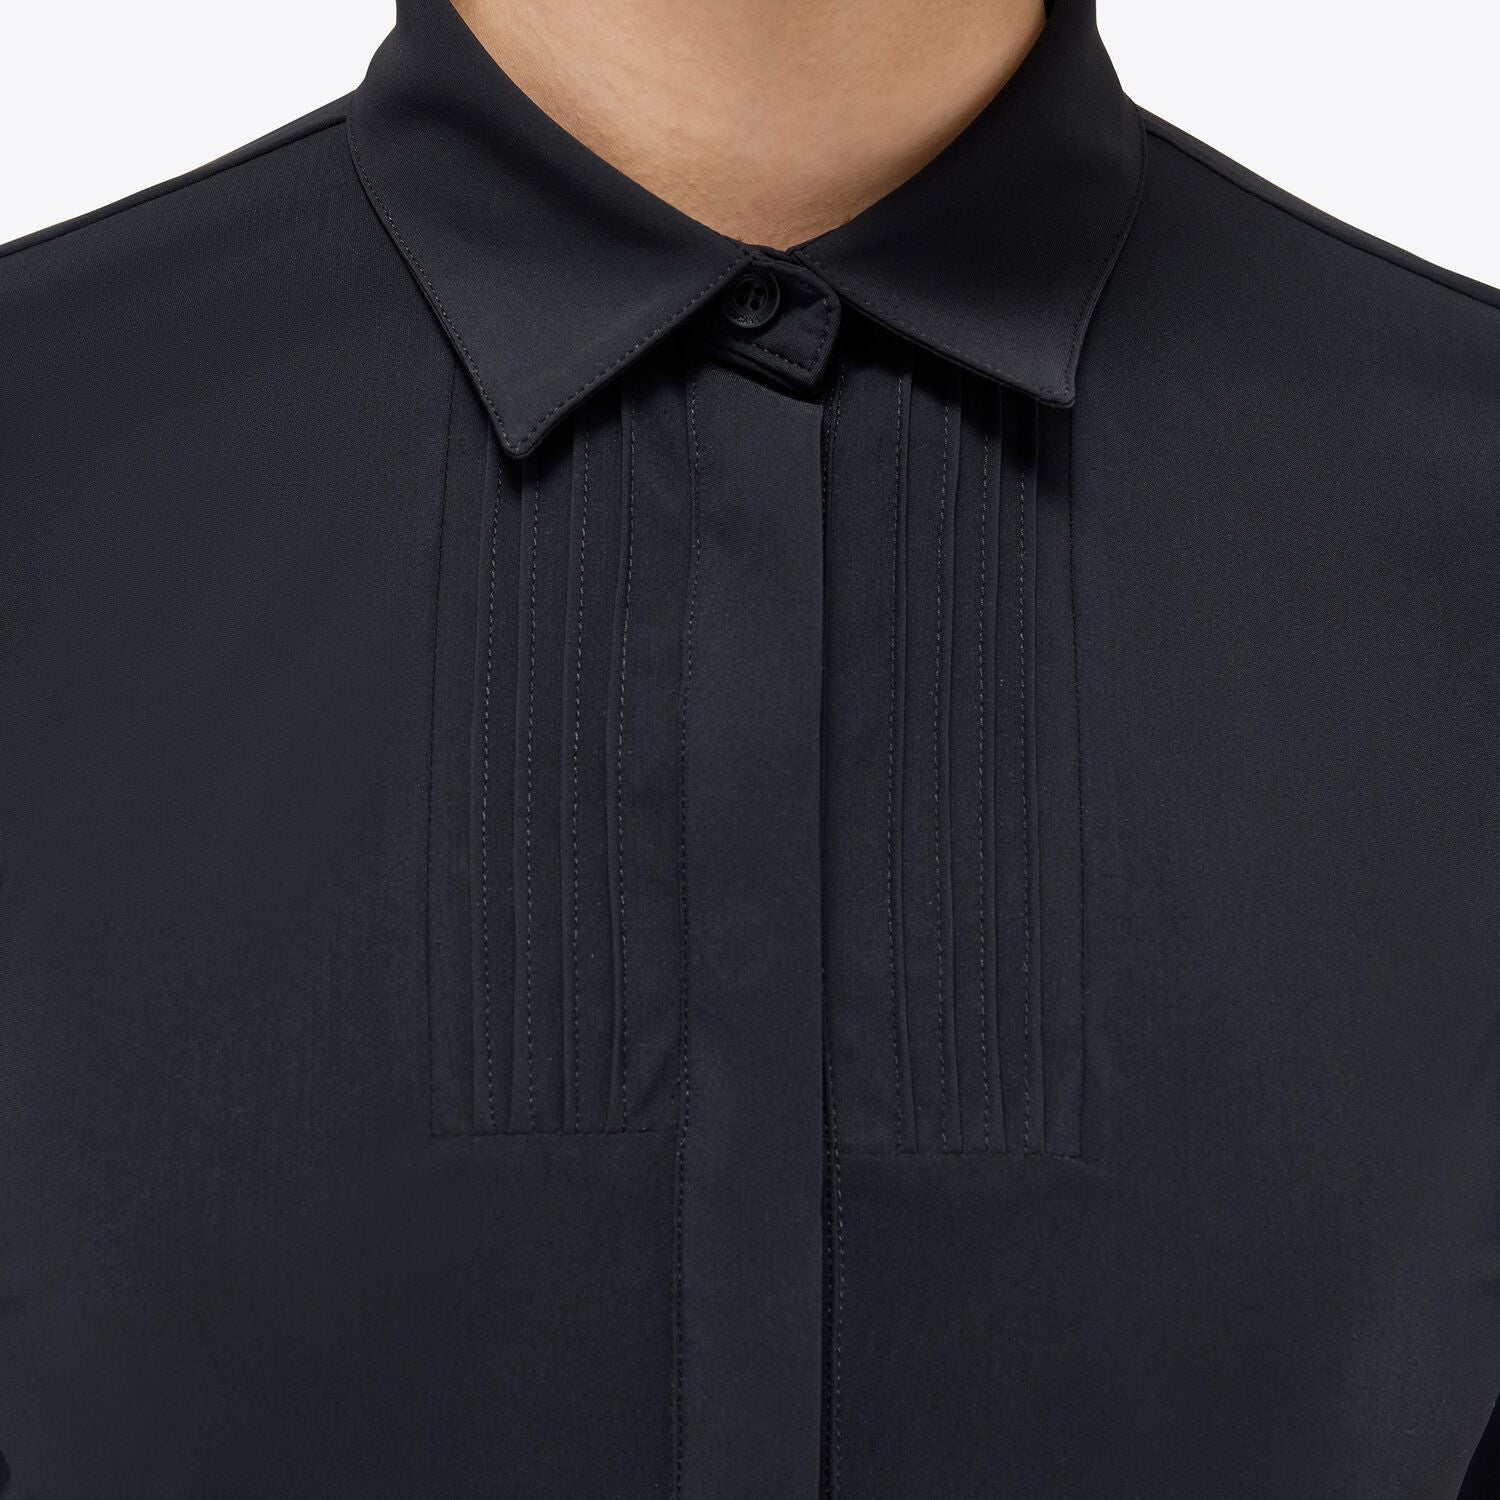 Langärmliges Lifestyle-Shirt aus leichtem Jersey für Frauen in Schwarz